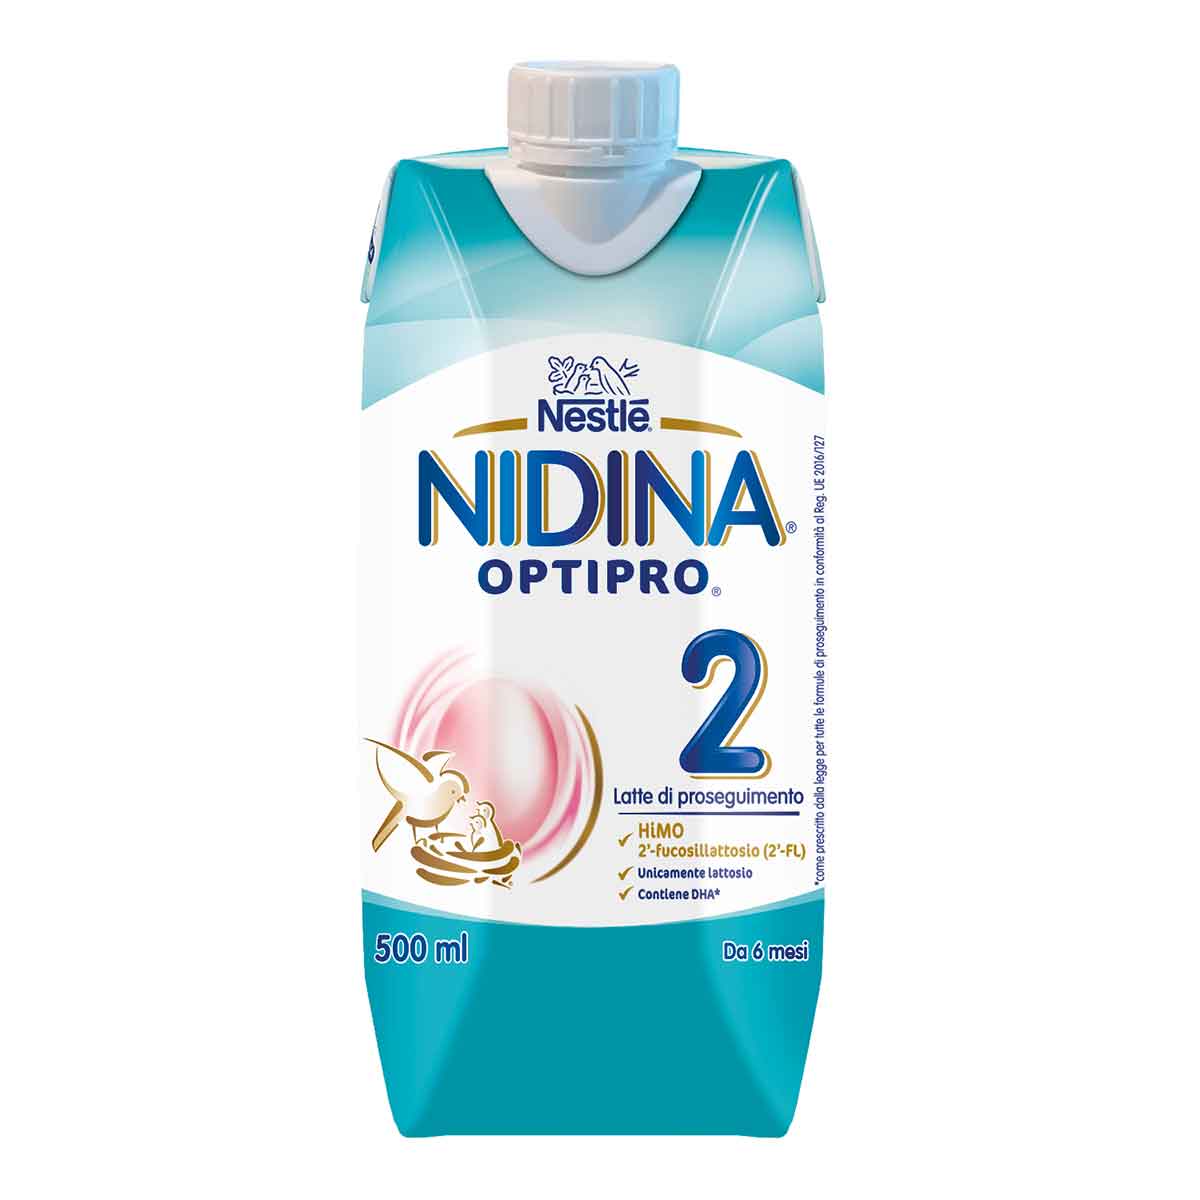 Nestlé NIDINA OPTIPRO 2 500 ml, Latte di proseguimento liquido, dal 6° mese compiuto al 12°